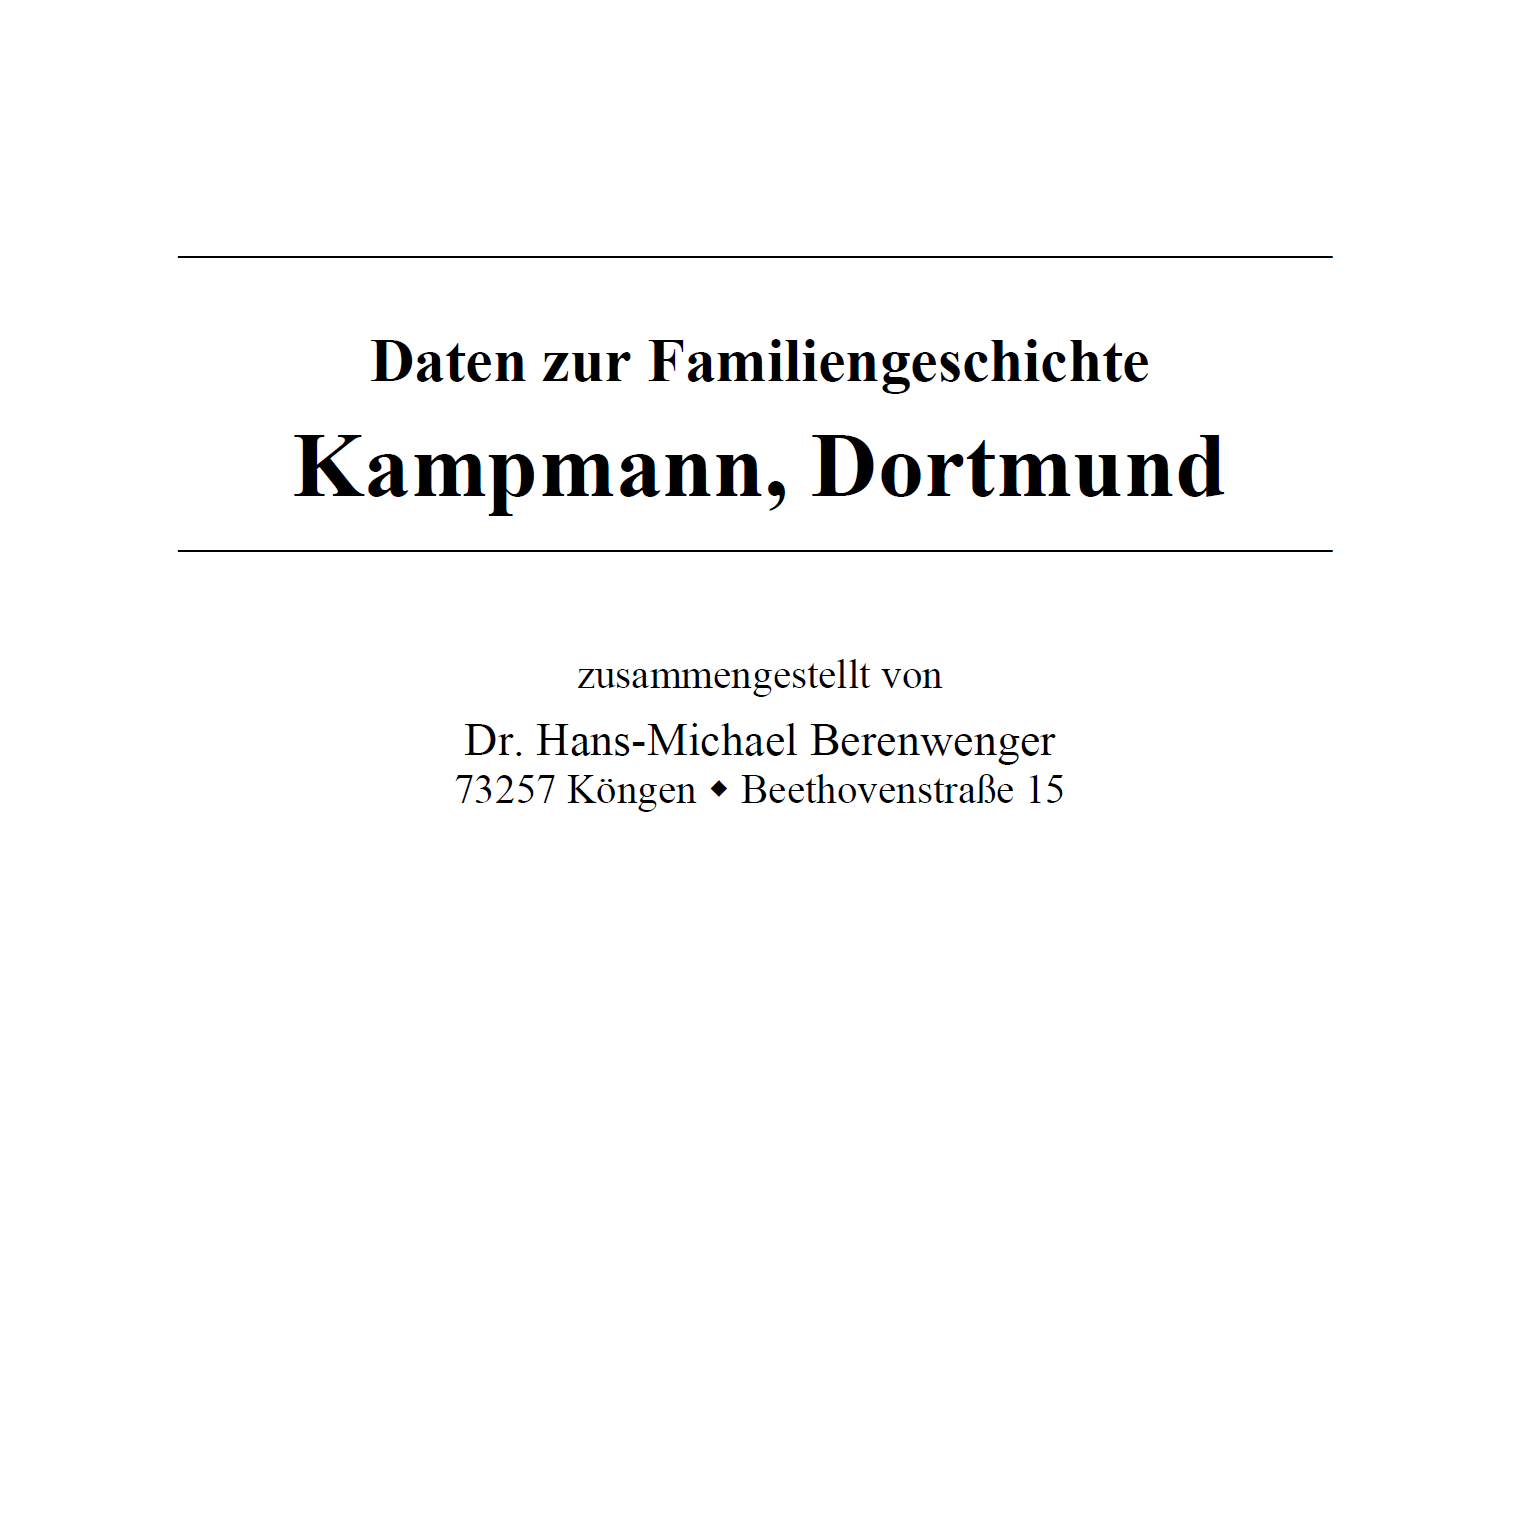 Berenwenger (2022), Familiengeschichte Kampmann, Dortmund